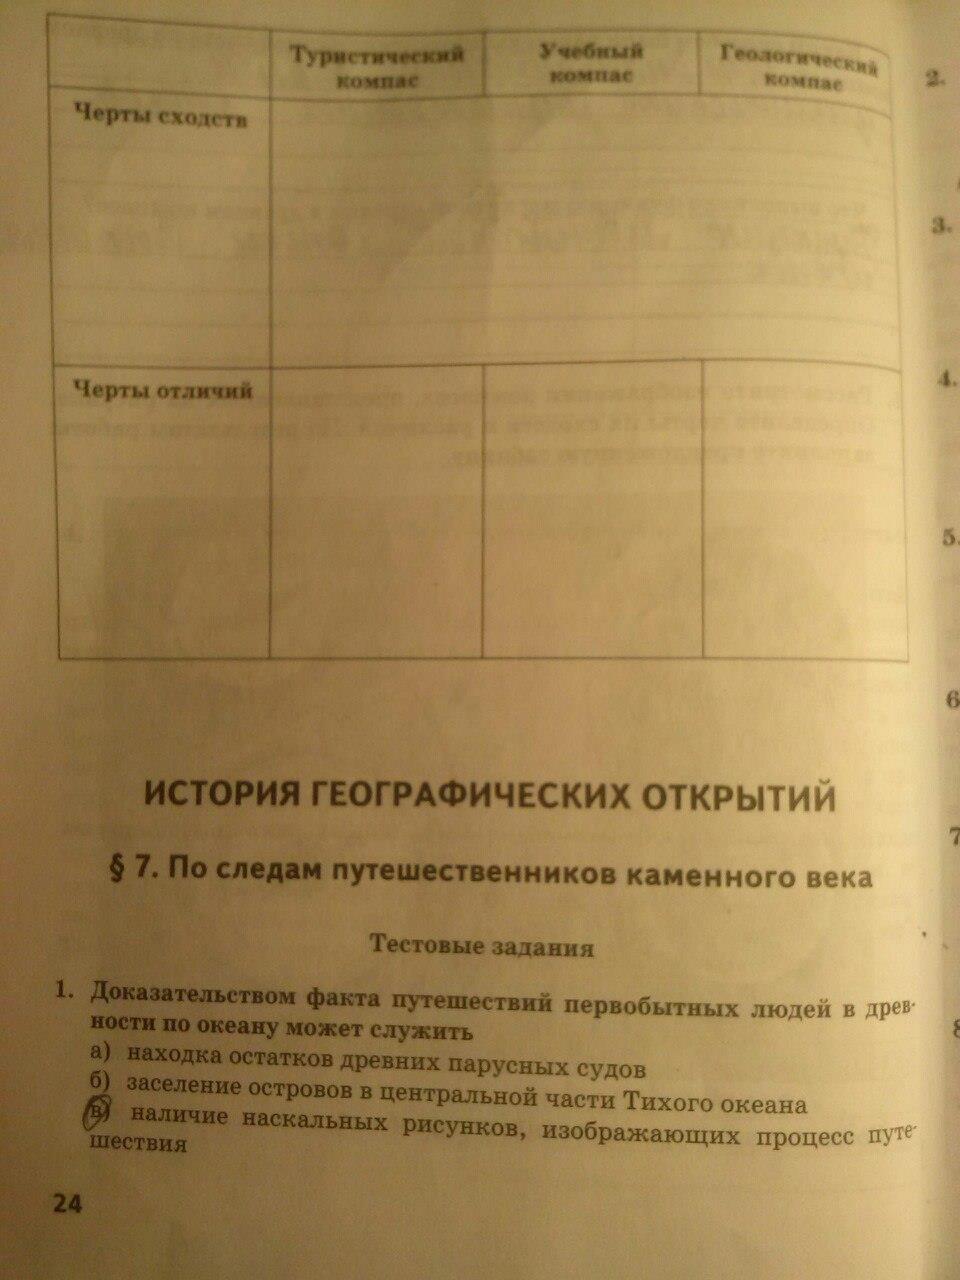 гдз 5 класс тетрадь-практикум страница 24 география Молодцов